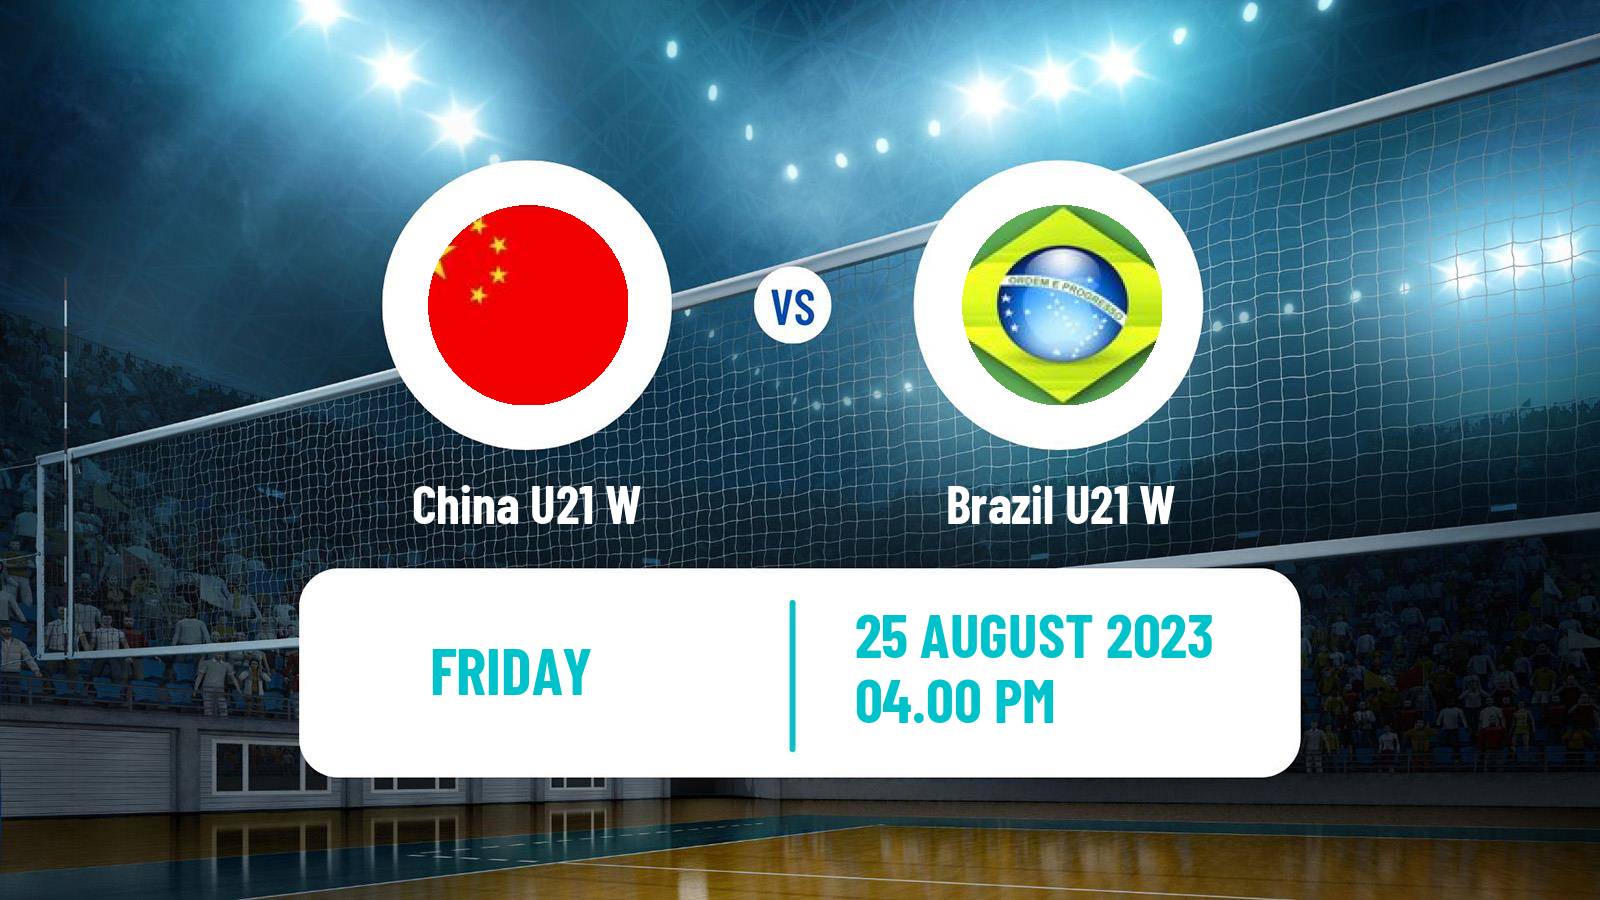 Volleyball World Championship U21 Volleyball Women China U21 W - Brazil U21 W